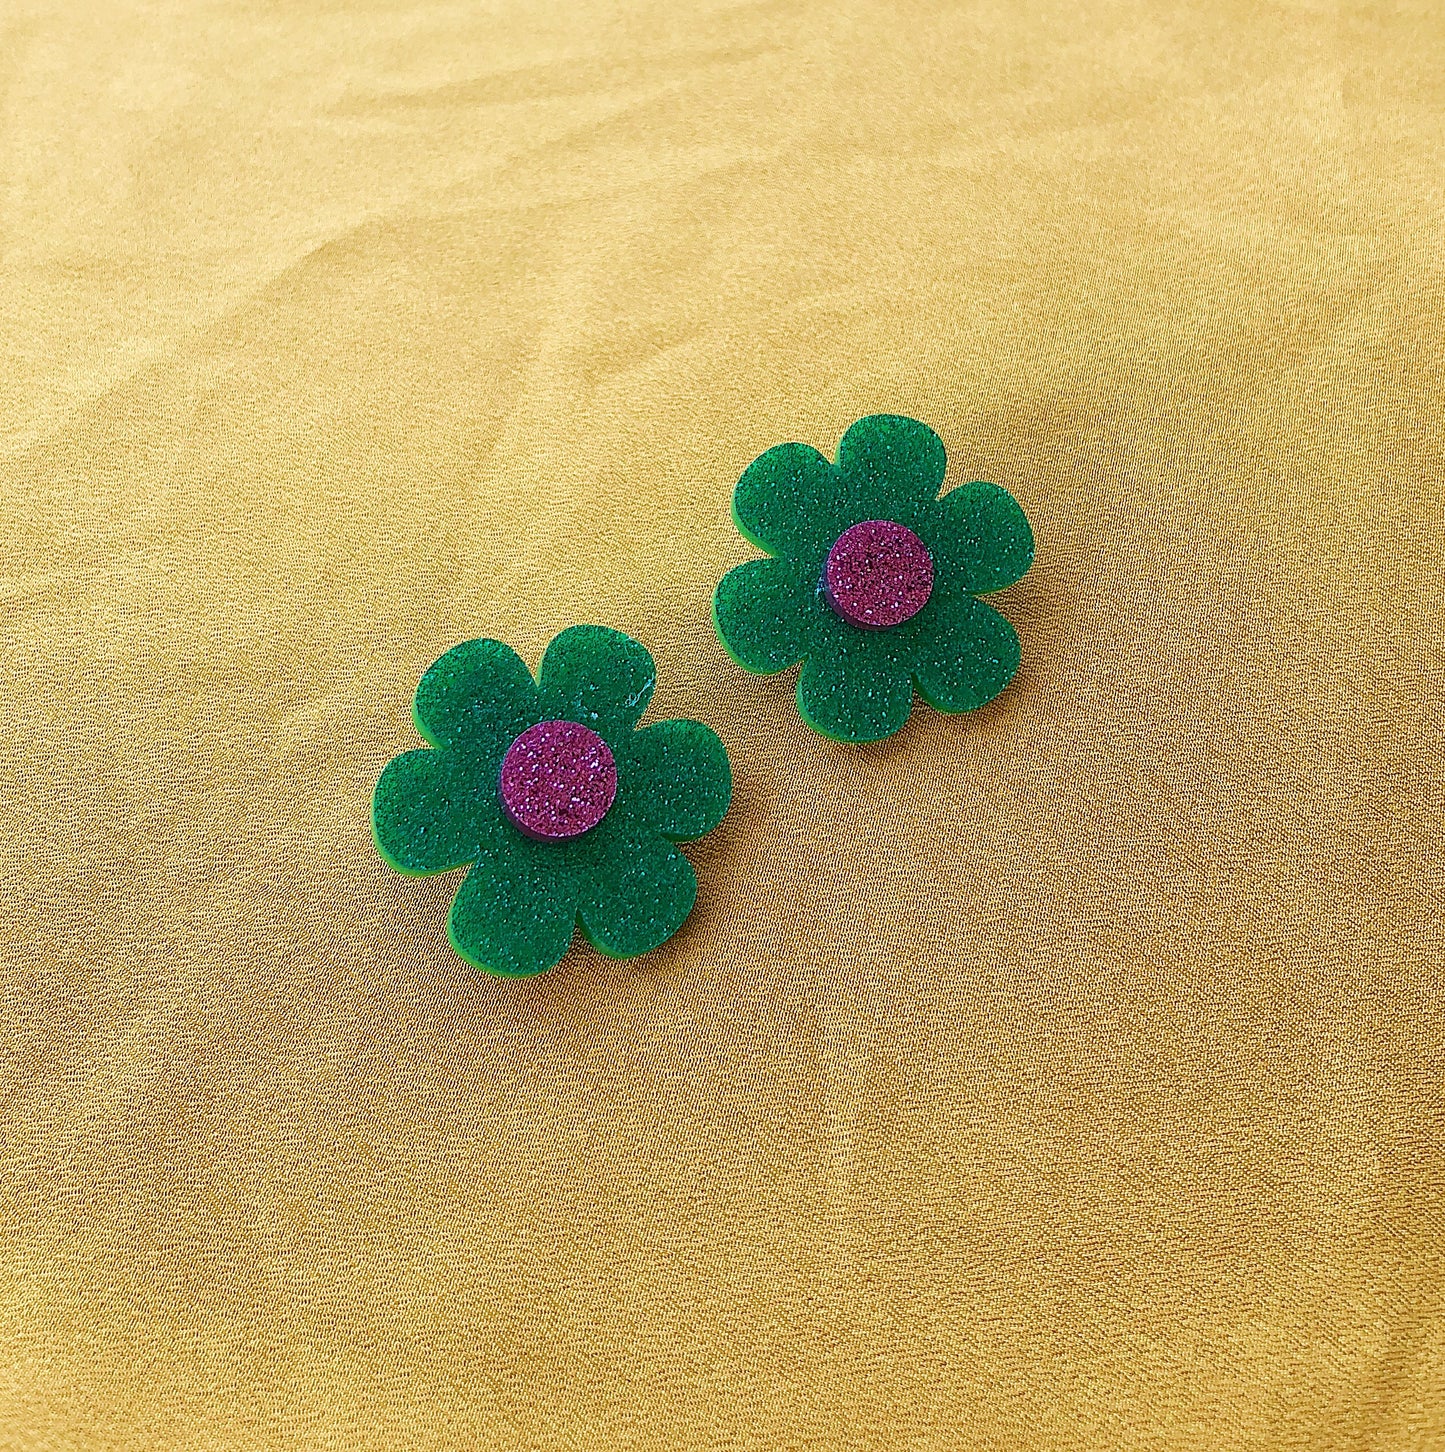 Closet Mod X Mintcloud Studio Earrings - Green & Purple Glitter Flower Studs